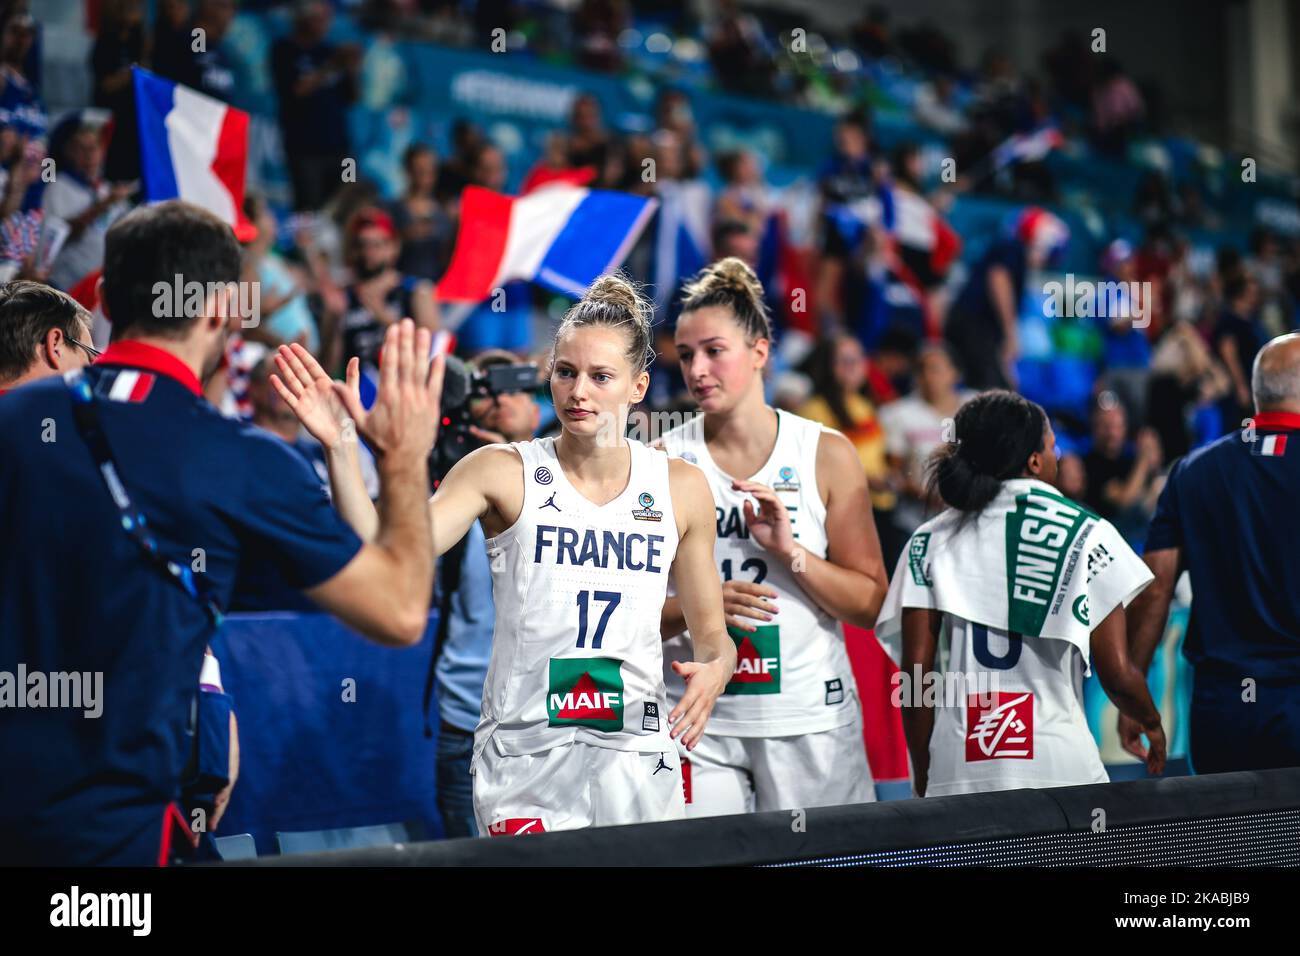 Espagne, Ténérife, 22 septembre 2018: Marines Johannes, joueuse française de basket-ball pendant la coupe du monde de basket-ball féminin de la FIBA Banque D'Images